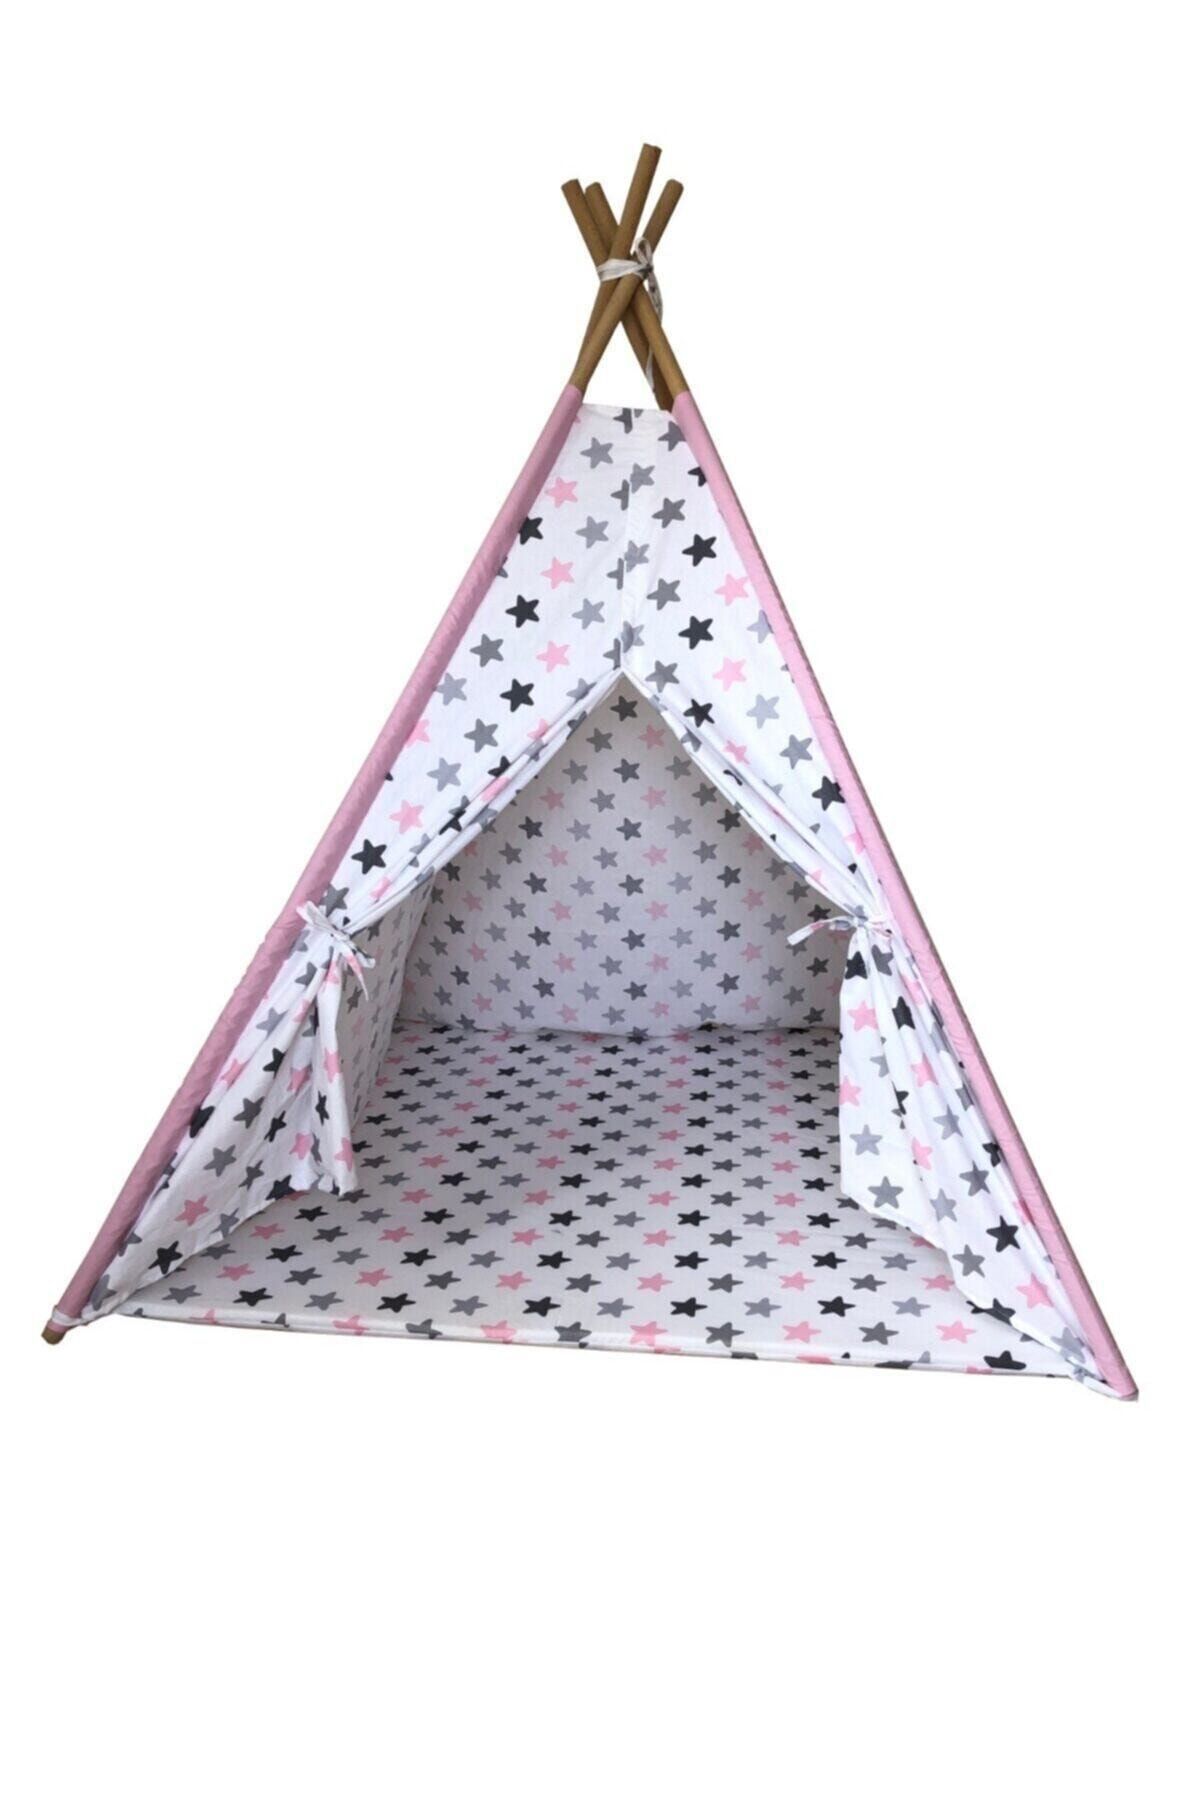 Sarayli Tekstil Saraylı Tekstil Oyun Çadırı